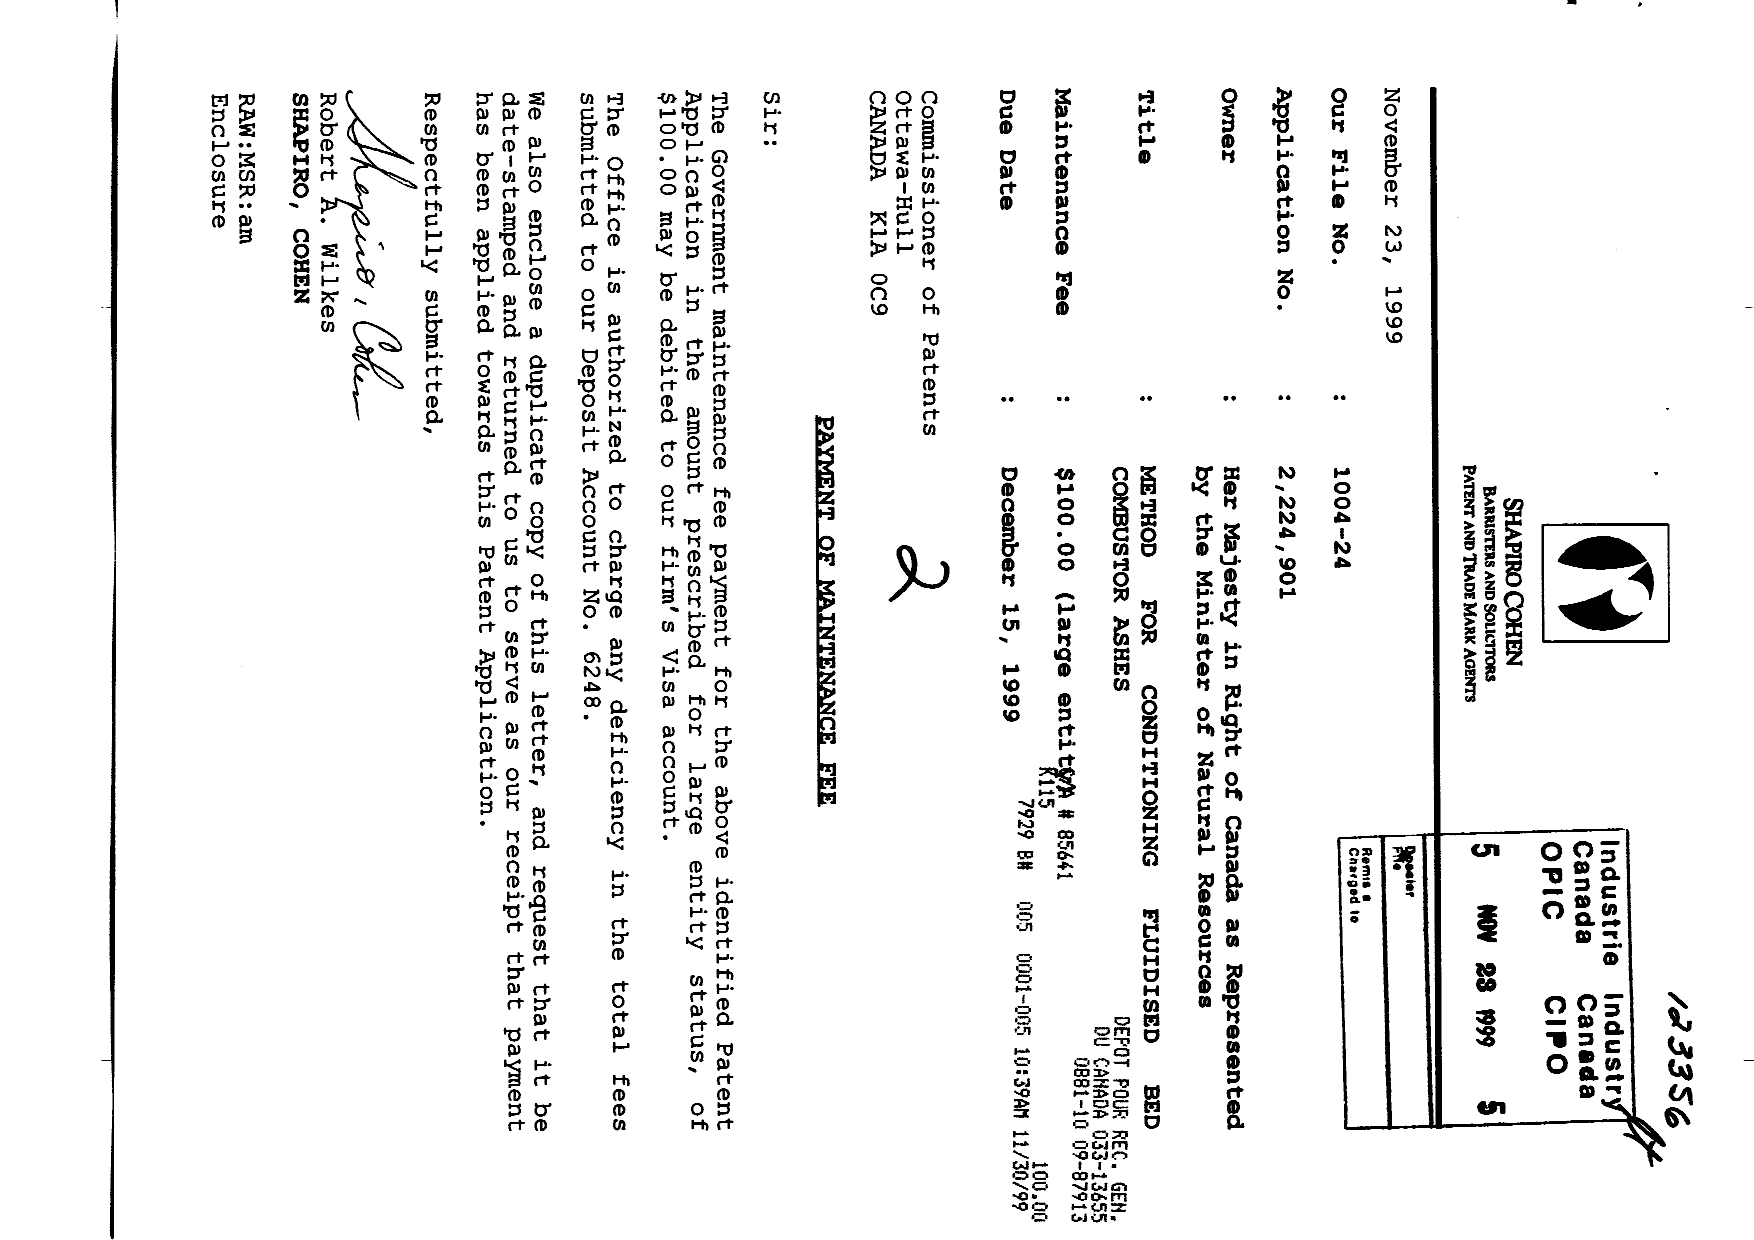 Document de brevet canadien 2224901. Taxes 19981223. Image 1 de 1